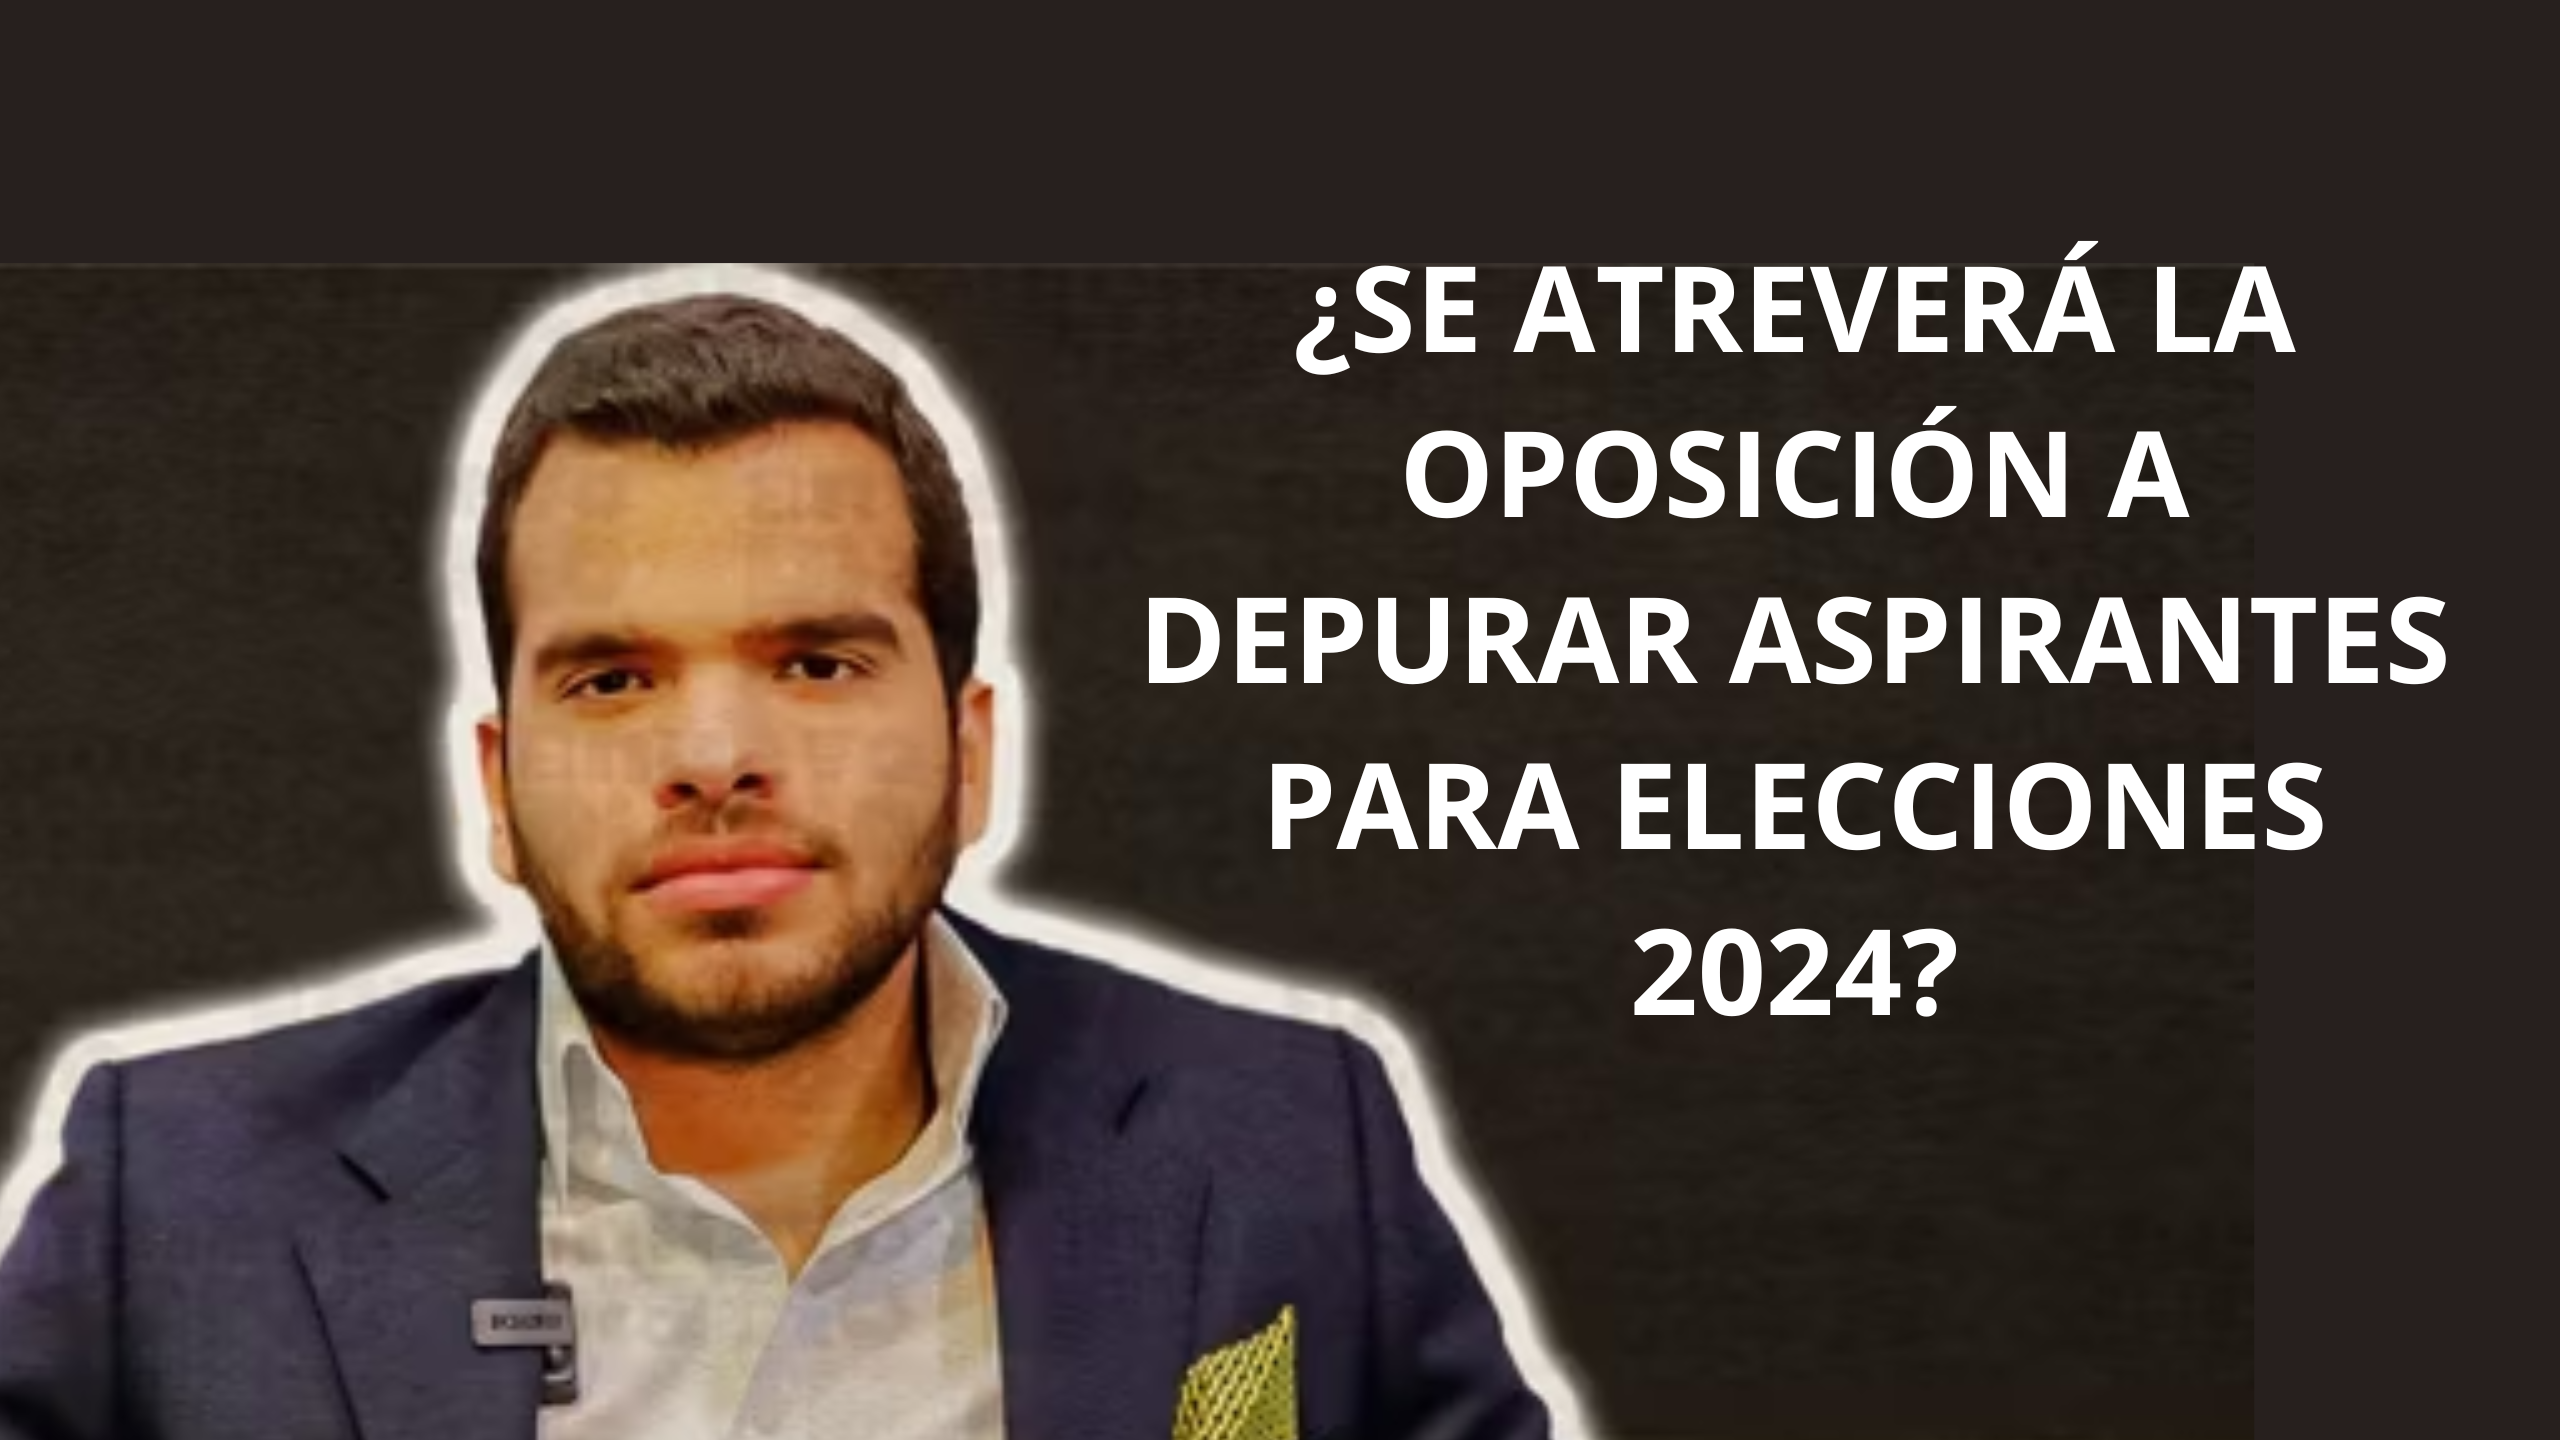 VICENTE SÁNCHEZ PIDE A OPOSICIÓN POLÍTICA A IMITAR AL PRM Y DEPURAR ASPIRANTES A CARGOS ELECTIVOS PARA ELECCIONES DEL 2024